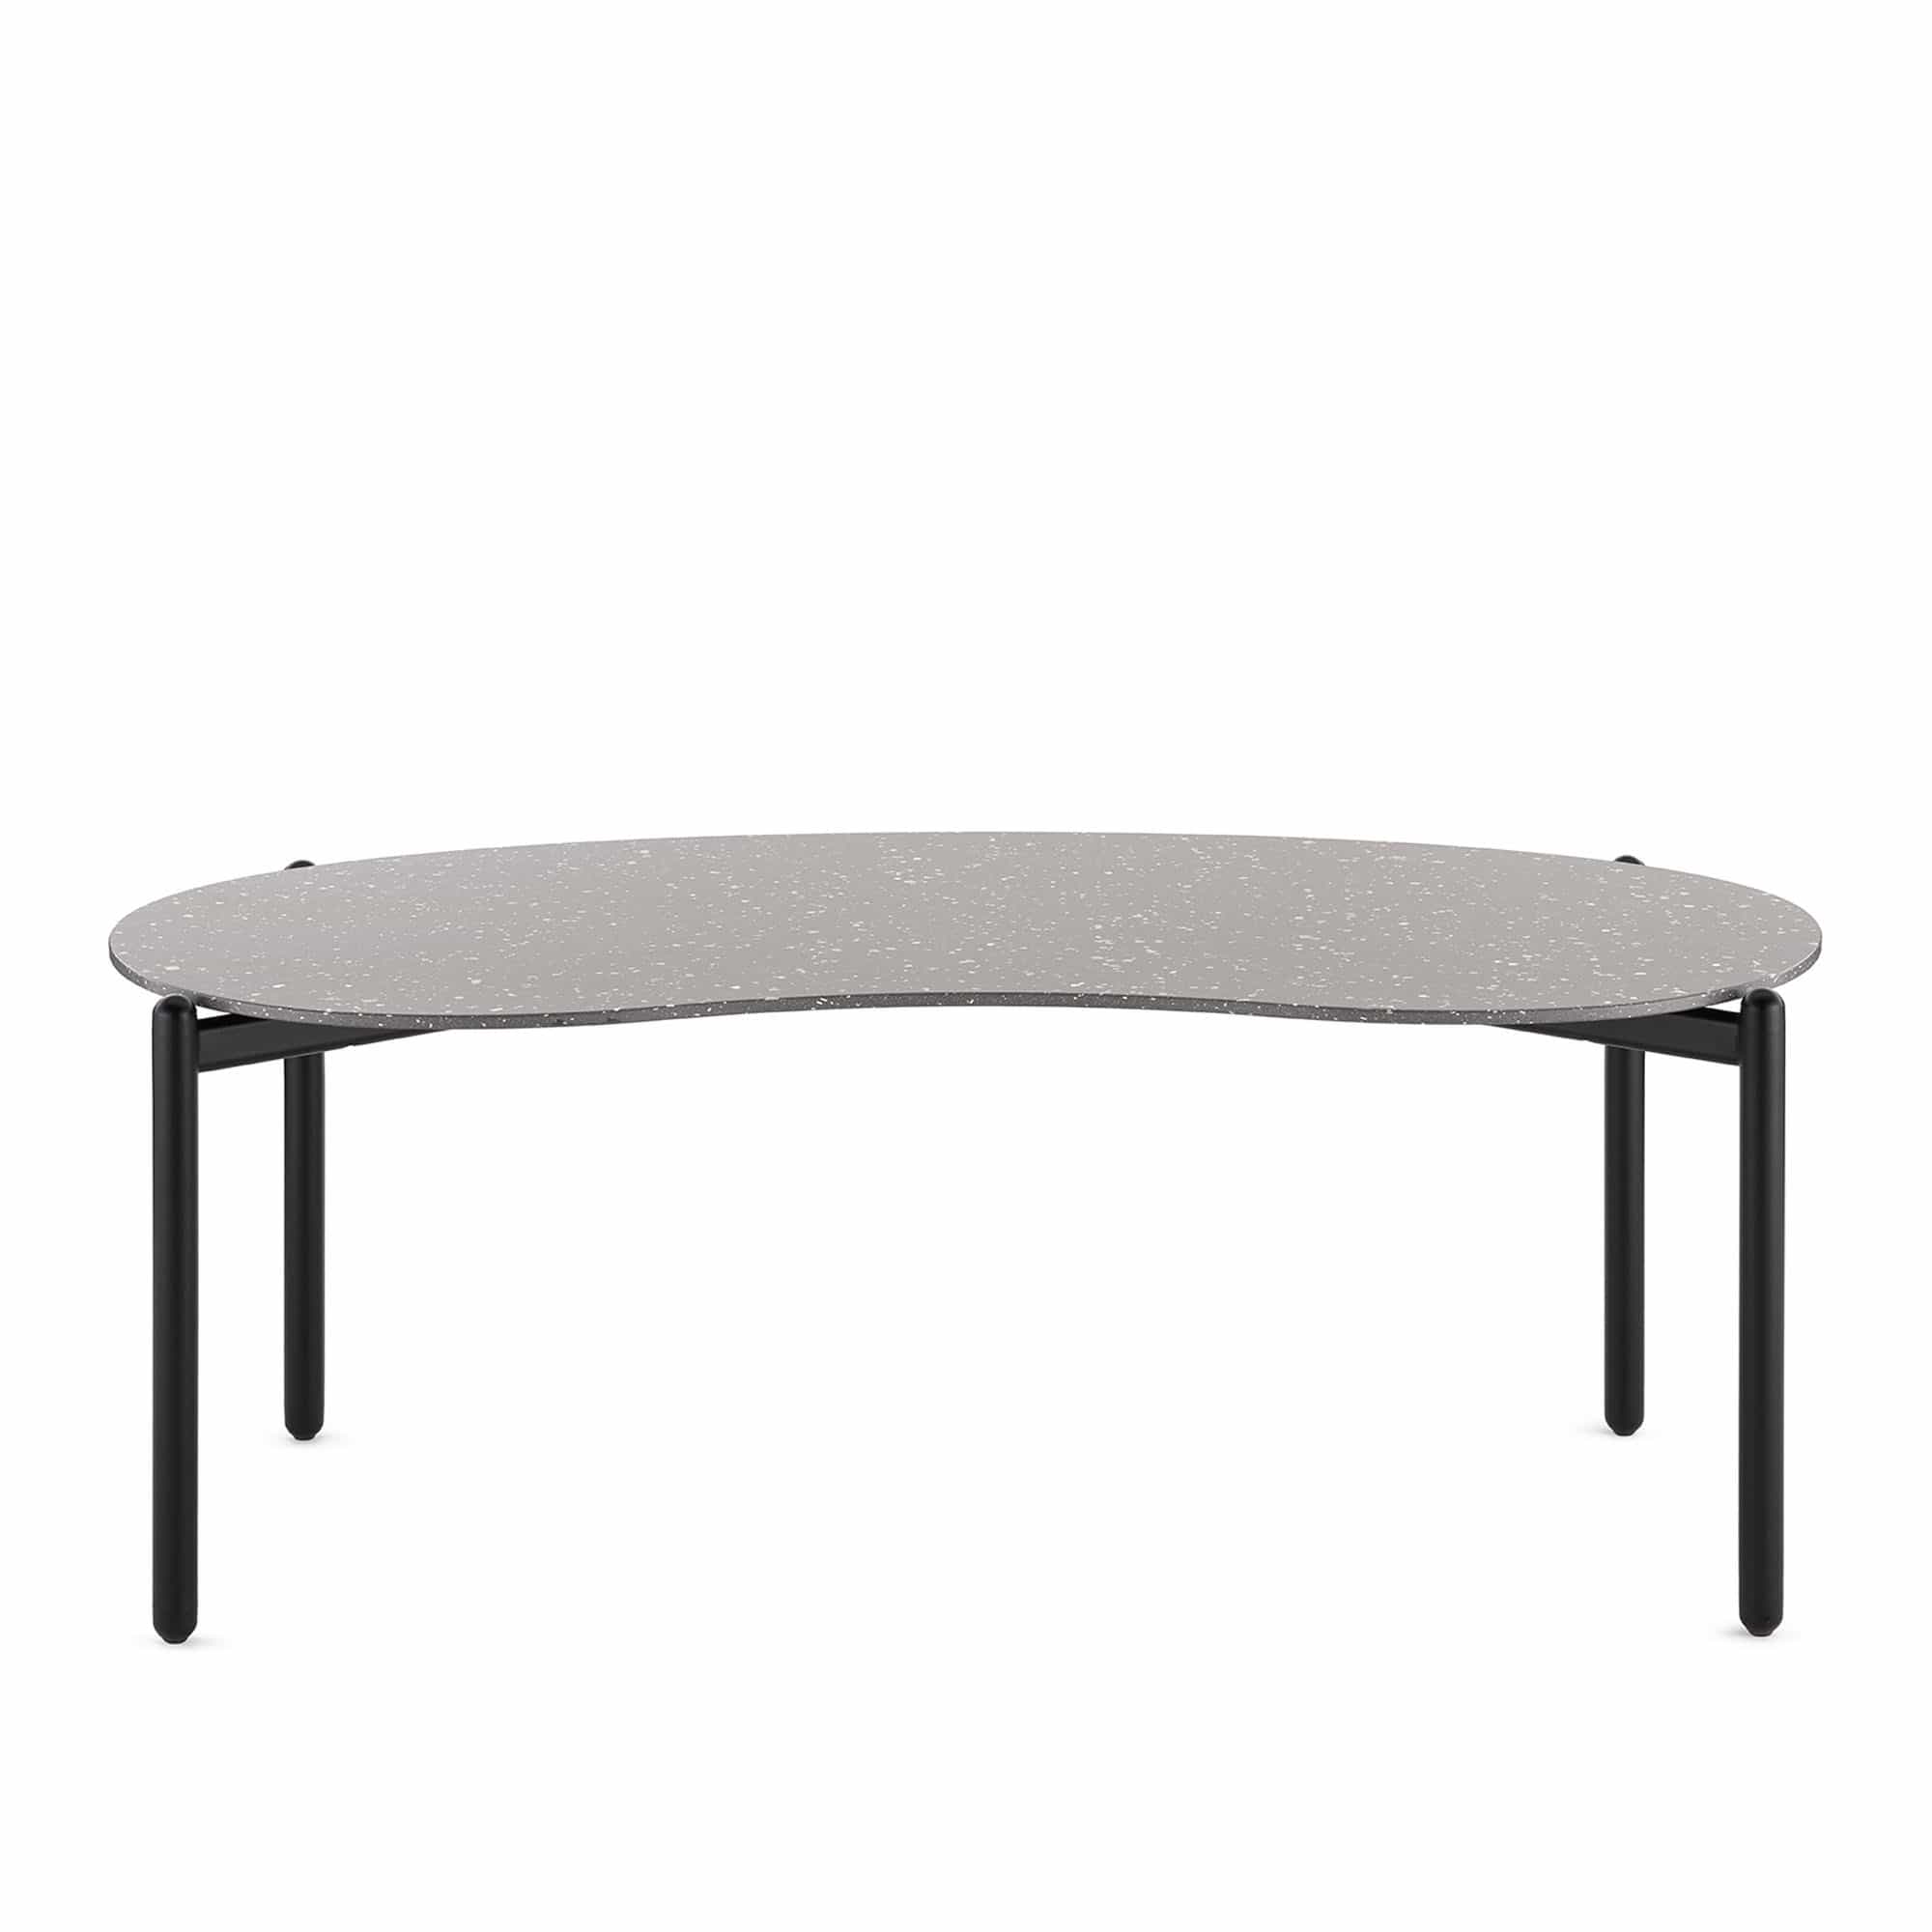 Undique Low Table 120x60